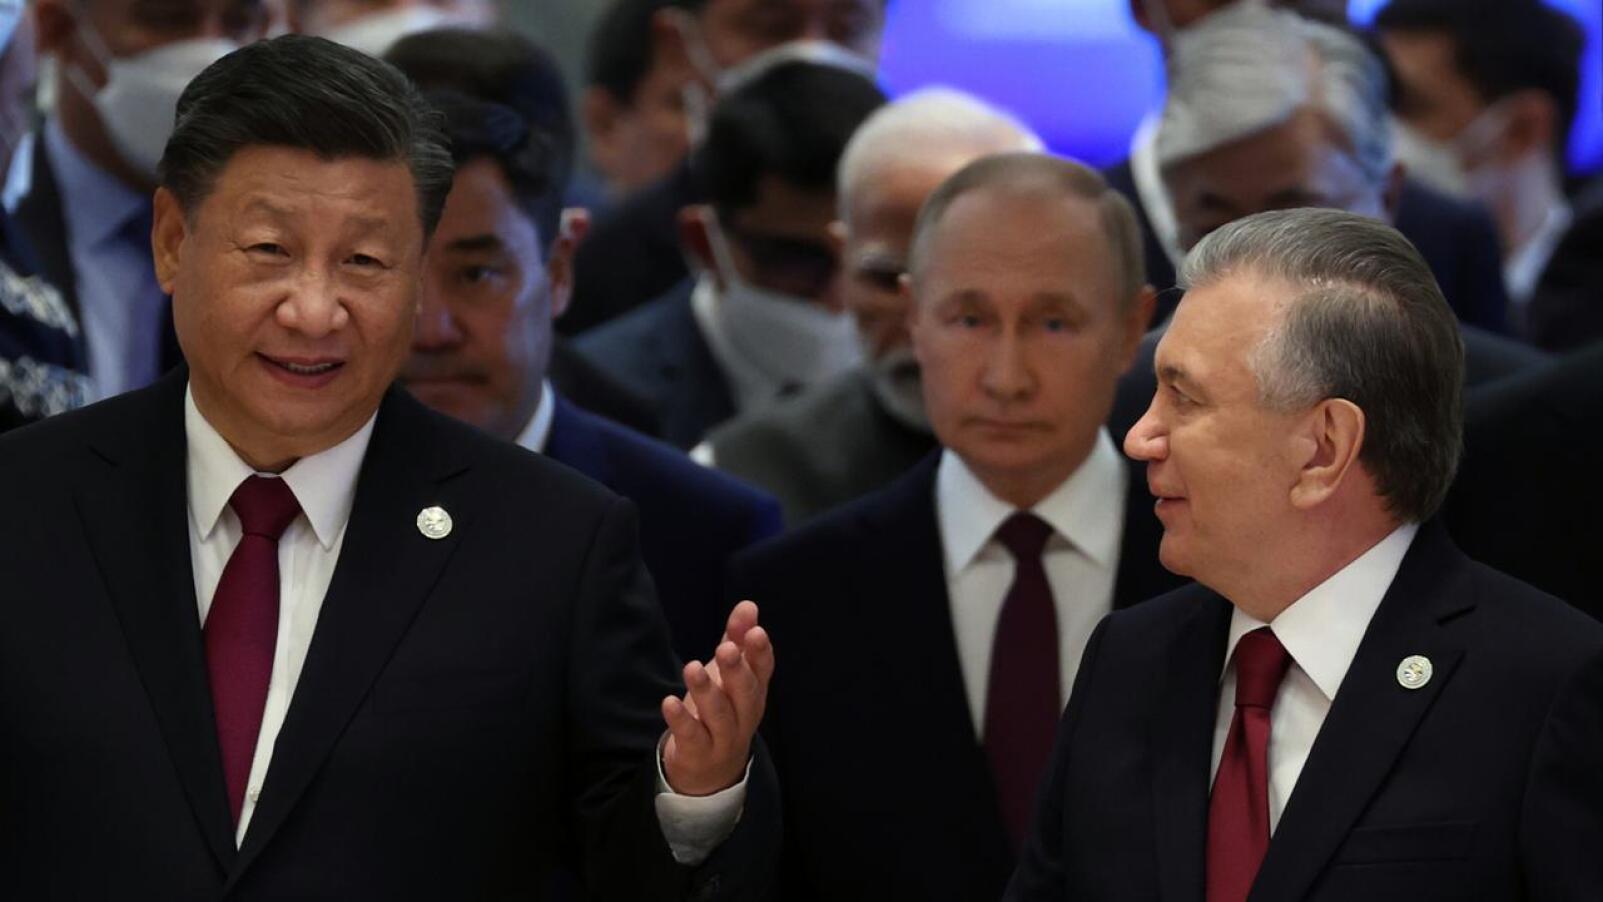 Kiinan presidentti Xi Jinping on tavannut Venäjän presidentin lähes 40 kertaa viimeisen kymmenen vuoden aikana. Xi, Putin ja Uzbekistanin presidentti Shavkat Mirziyoyev kävelivät yhdessä SCO-kokoukseen. SCO on 2001 perustettu liittoutuma, johon kuuluvat Kiina, Intia, Kazakstan, Kirgisia, Venäjä, Pakistan ja Tajikistan.